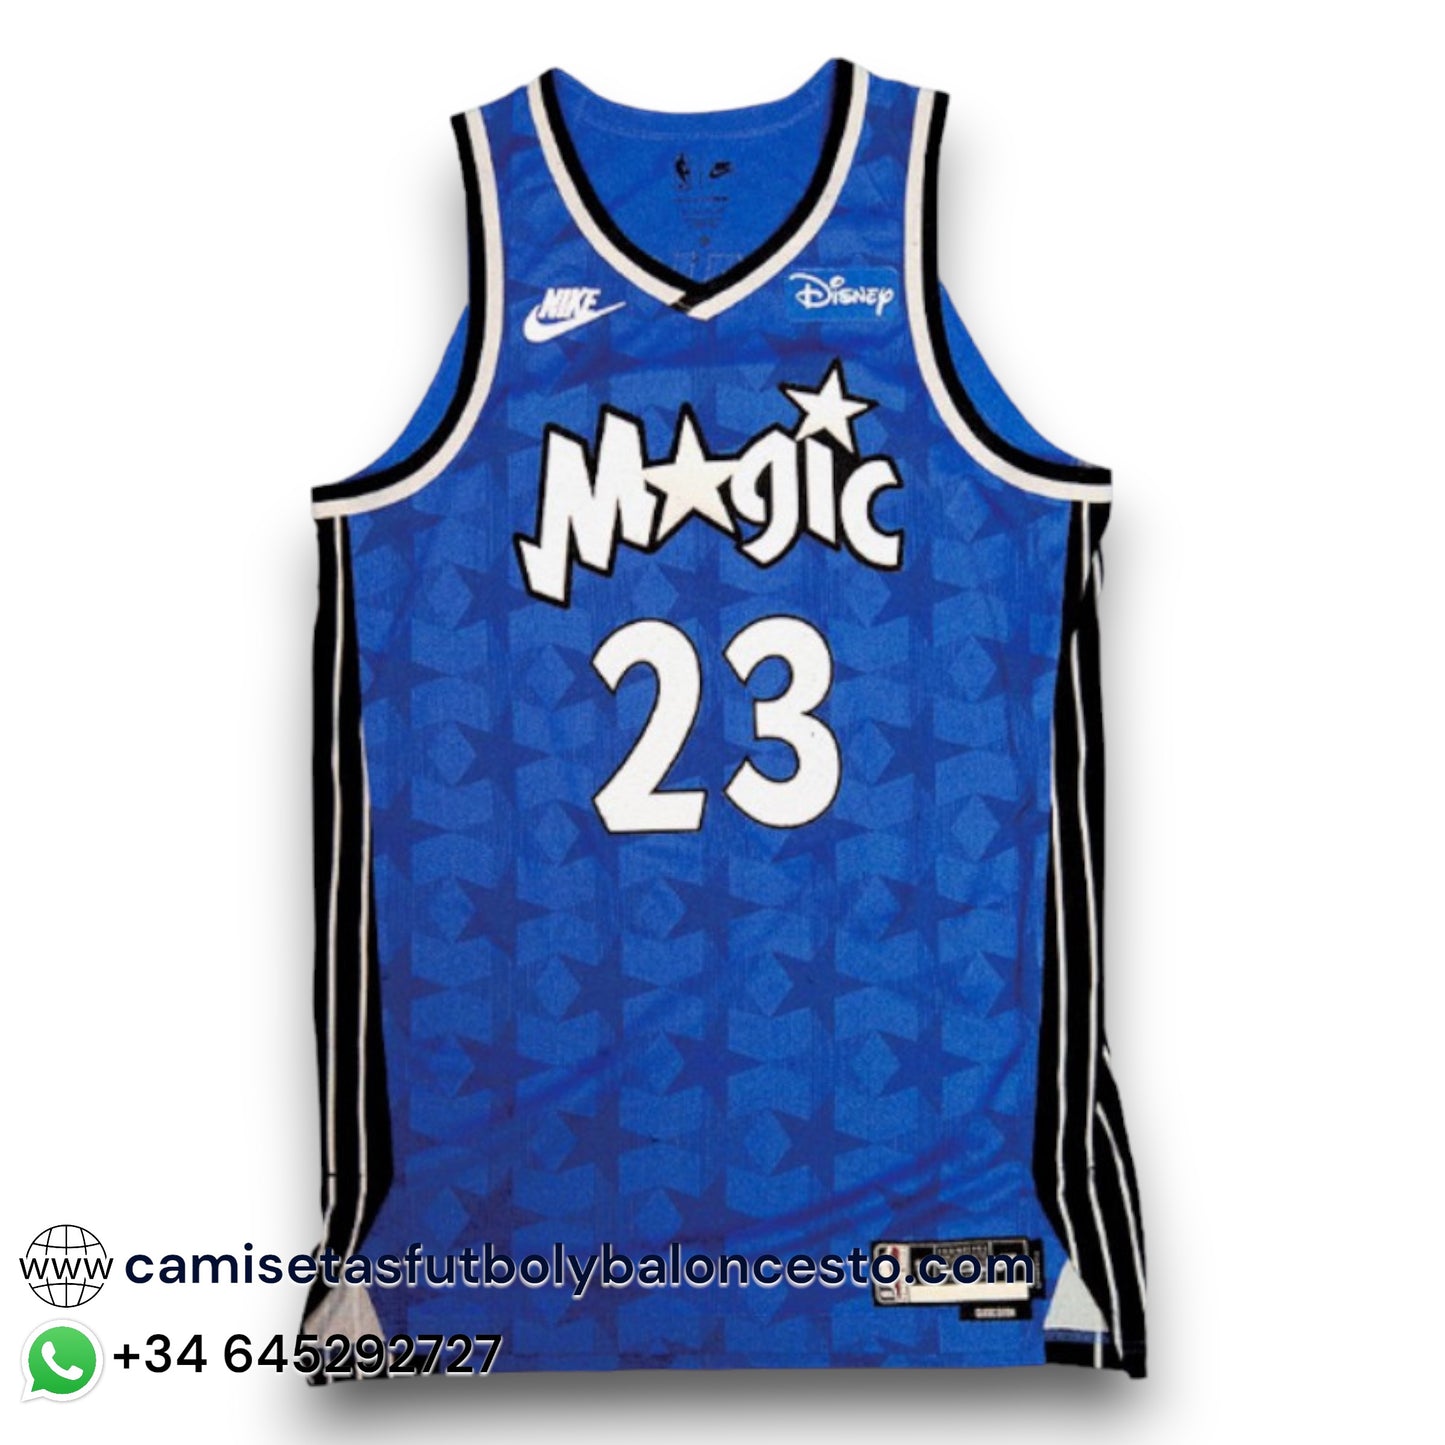 Camiseta Orlando Magic Classic 20232024 camisetasfutbolbaloncesto